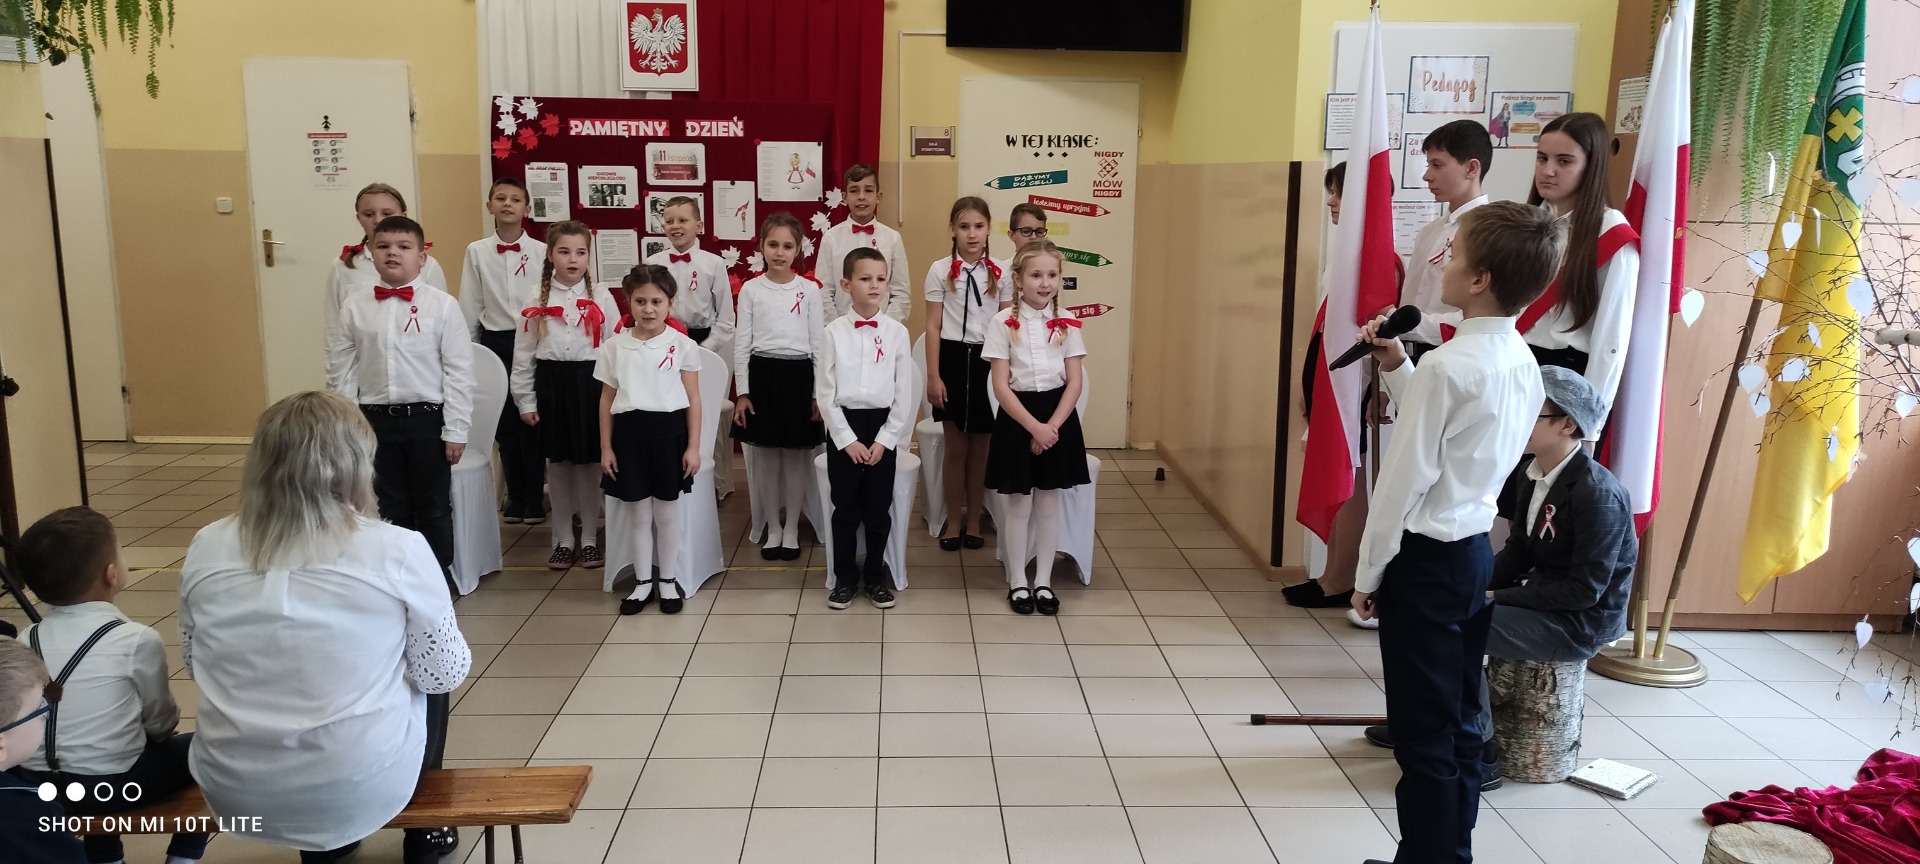 Akademia z okazji 104 rocznicy uchwalenia Niepodległości przez Polskę - Obrazek 3